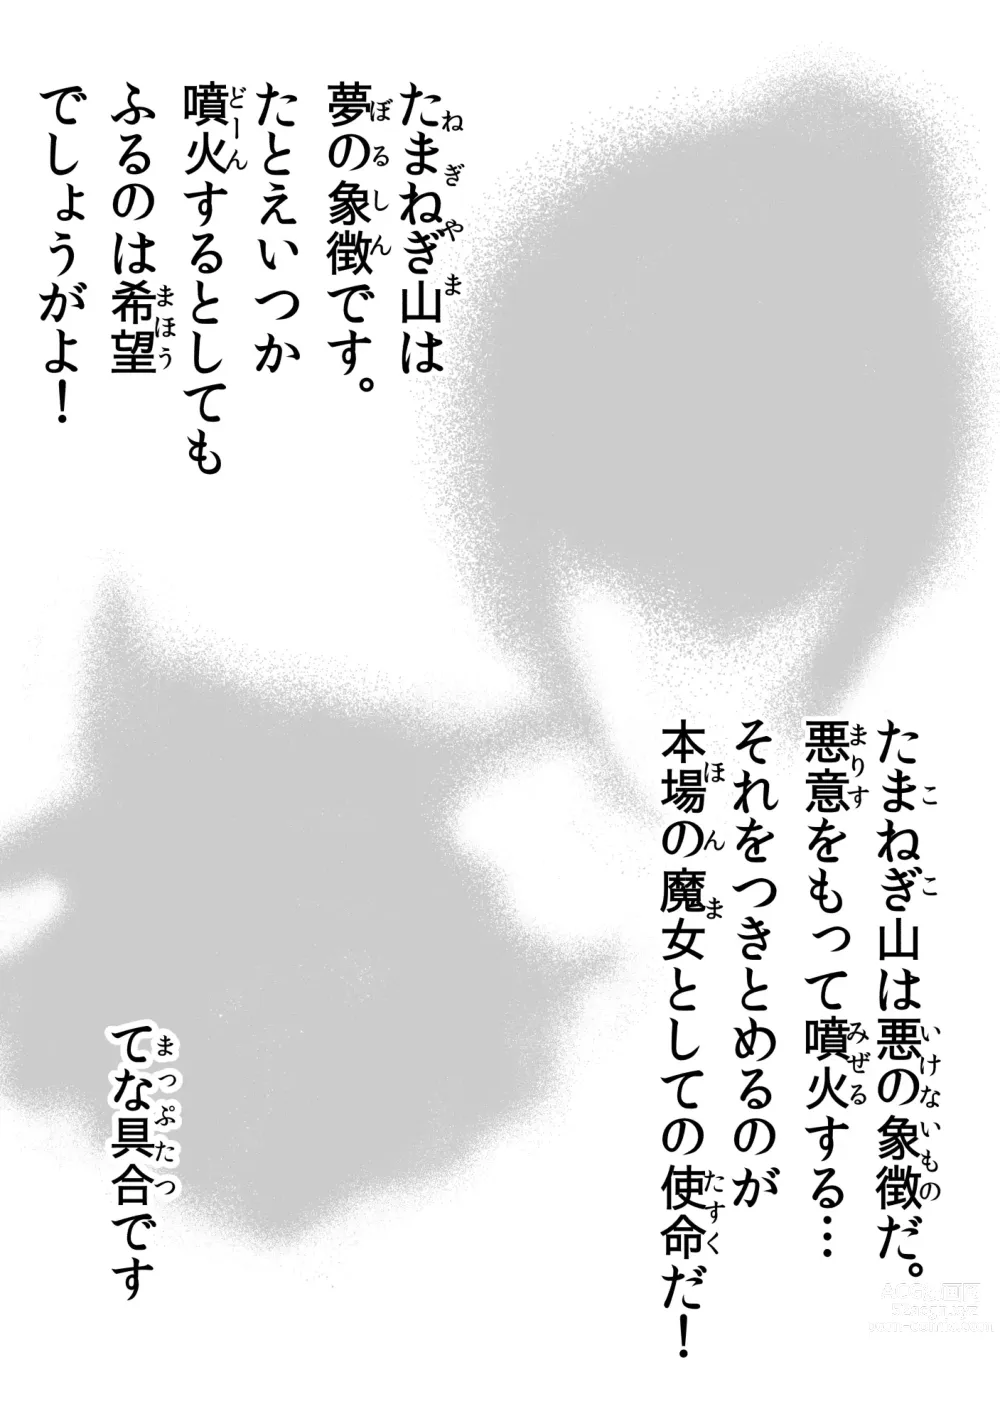 Page 26 of manga 悪の話